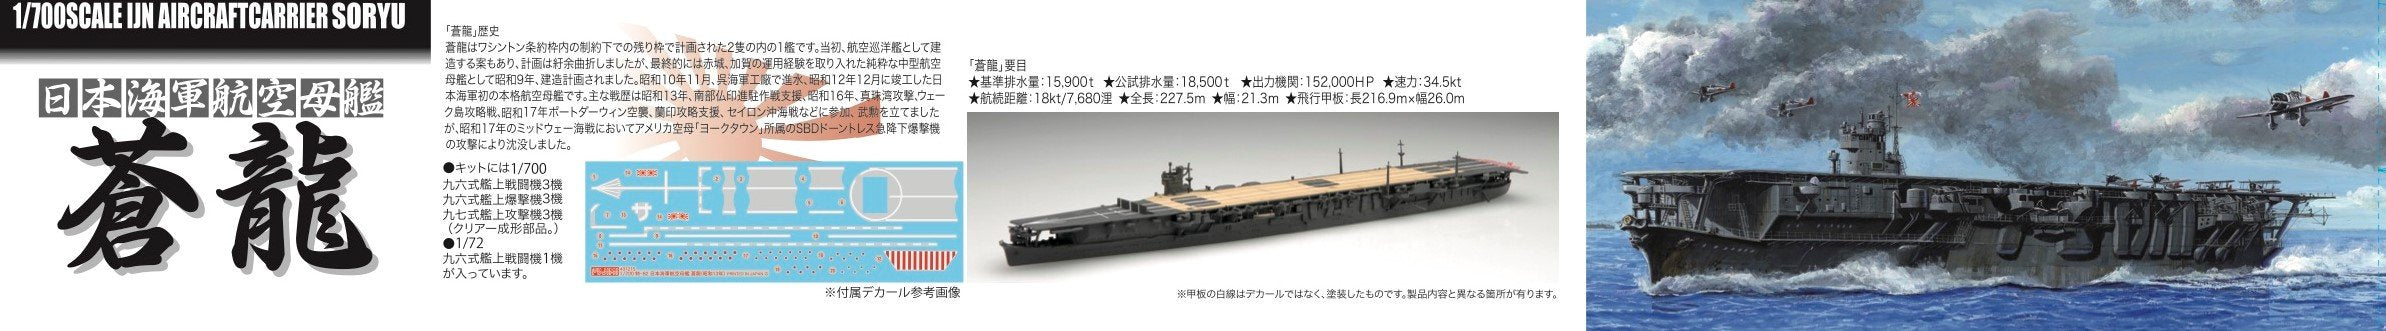 Fujimi modèle 1/700 série spéciale Spot n° 58 porte-avions de la marine japonaise Soryu Showa 13 1/72 quatre-vingt-seize batailles en plastique modèle spécial Sp58